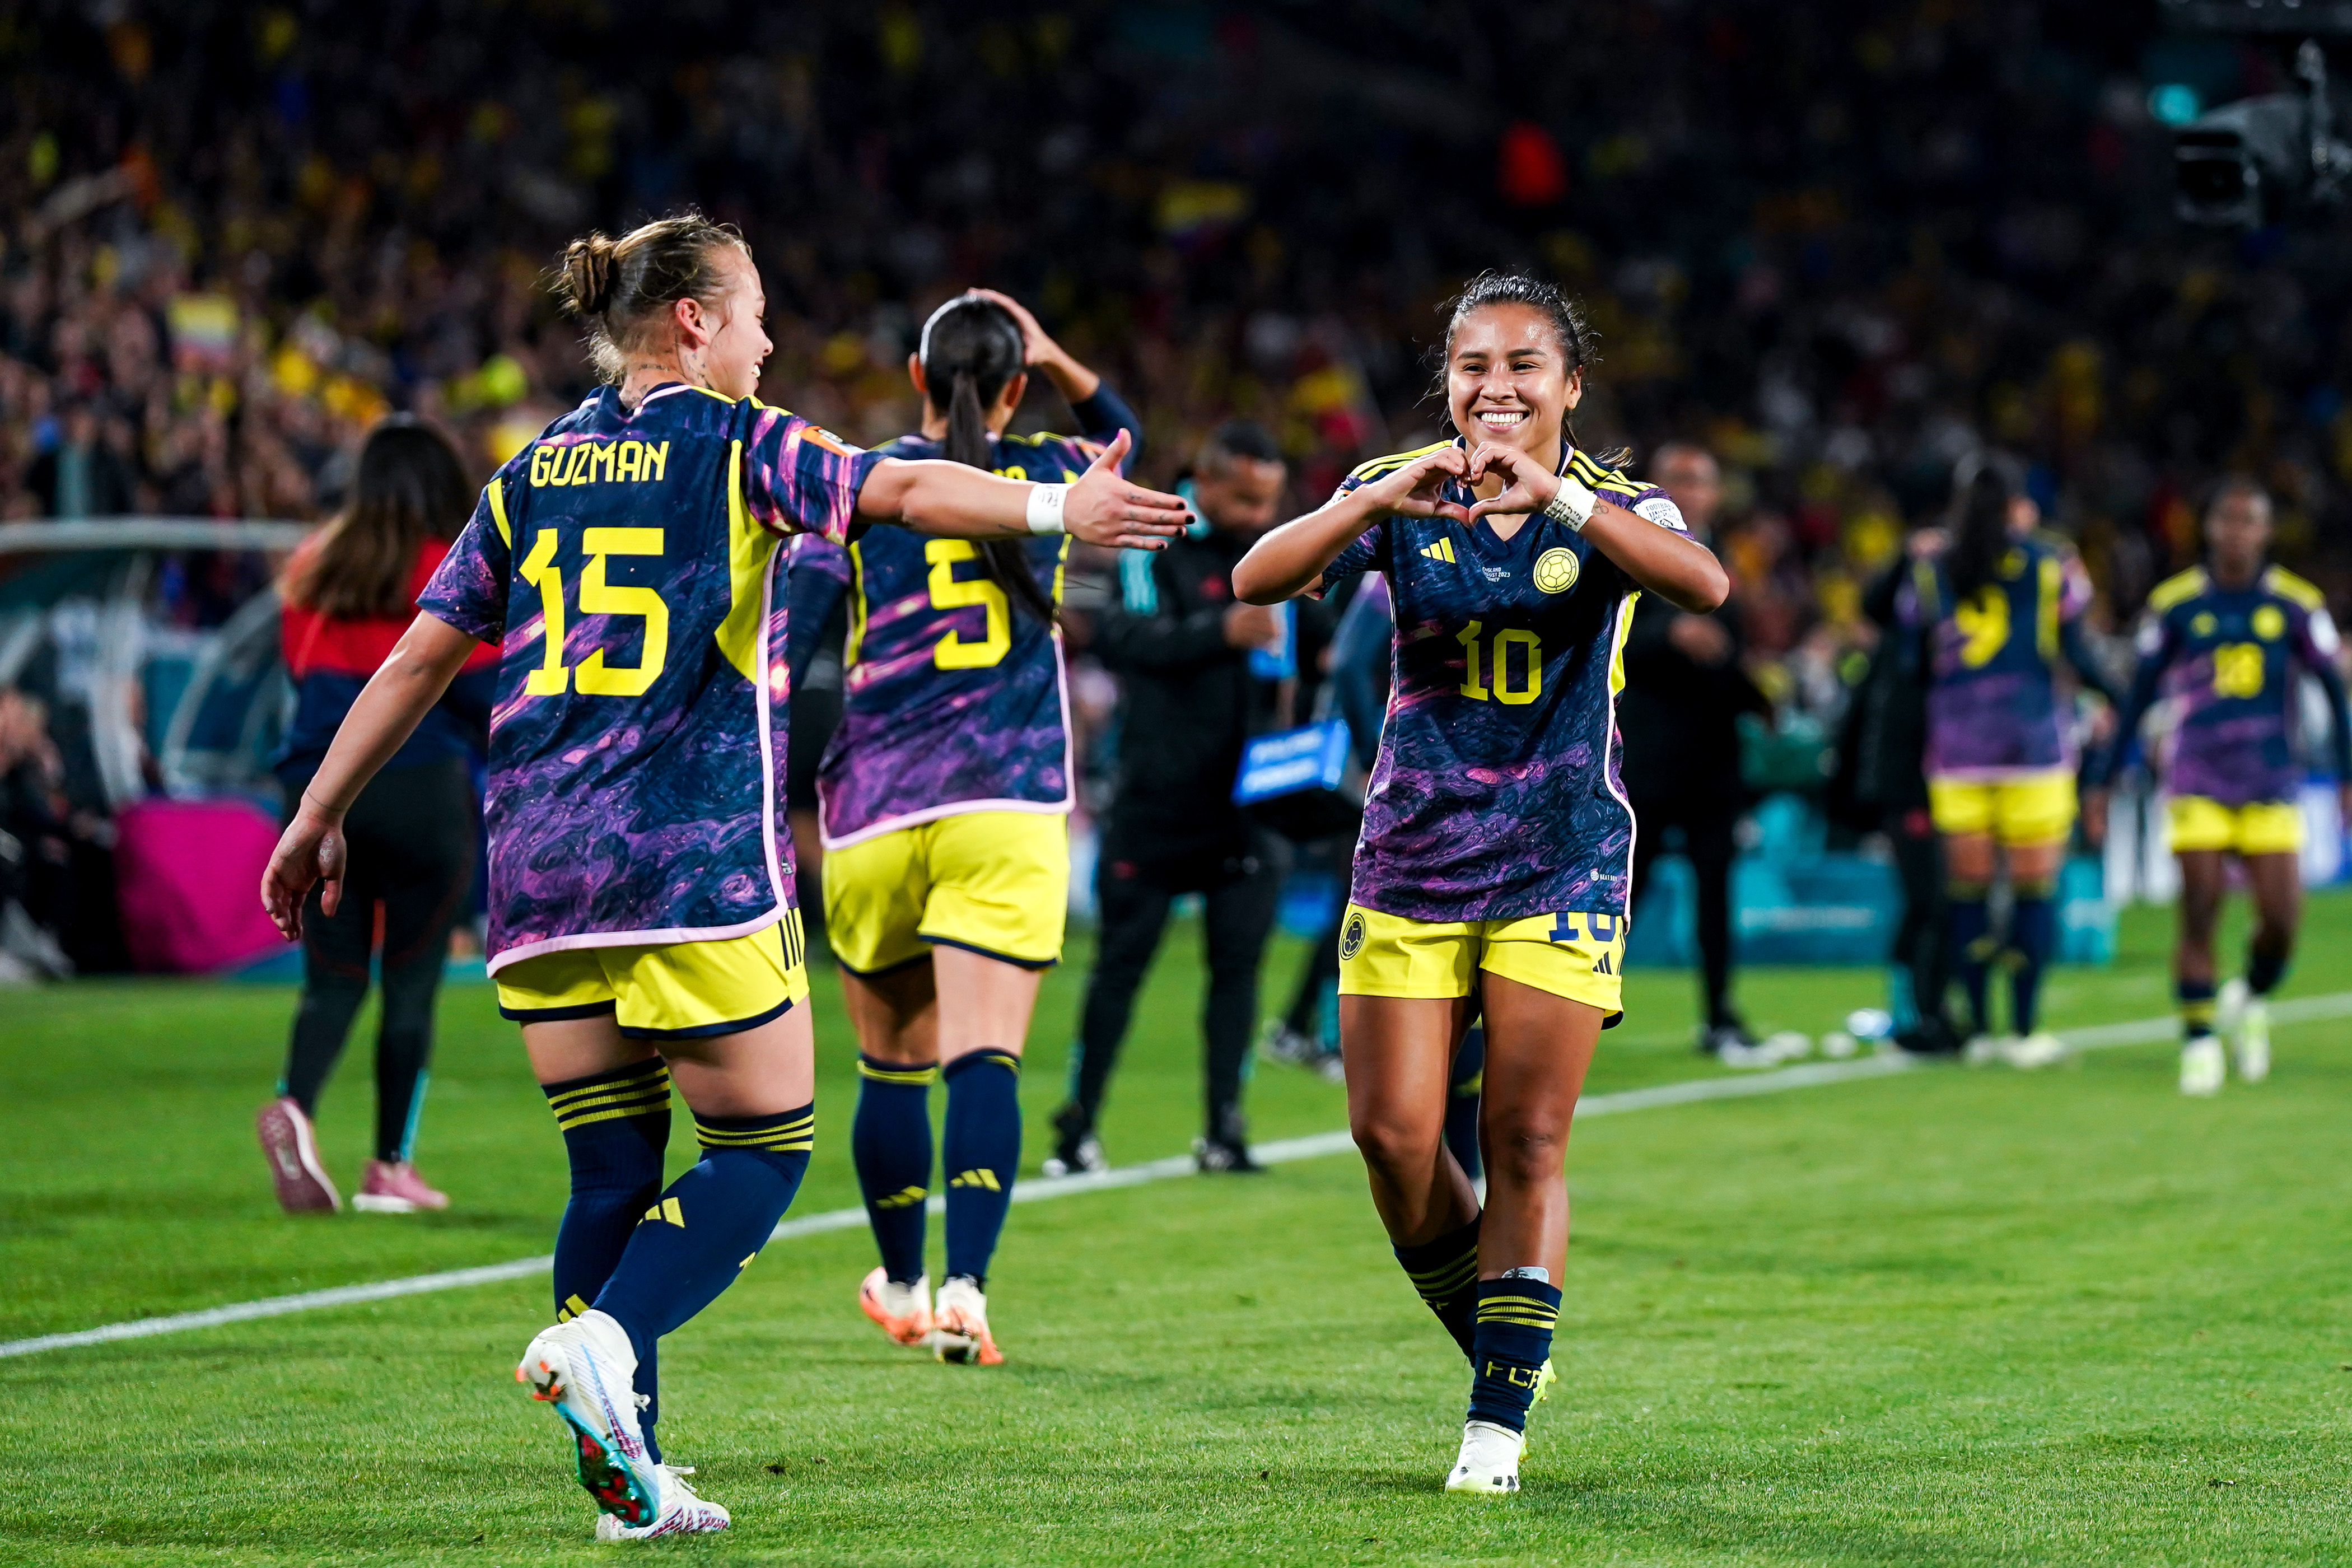 Welches Erbe die Frauen-Fußball-Weltmeisterschaft hinterlässt